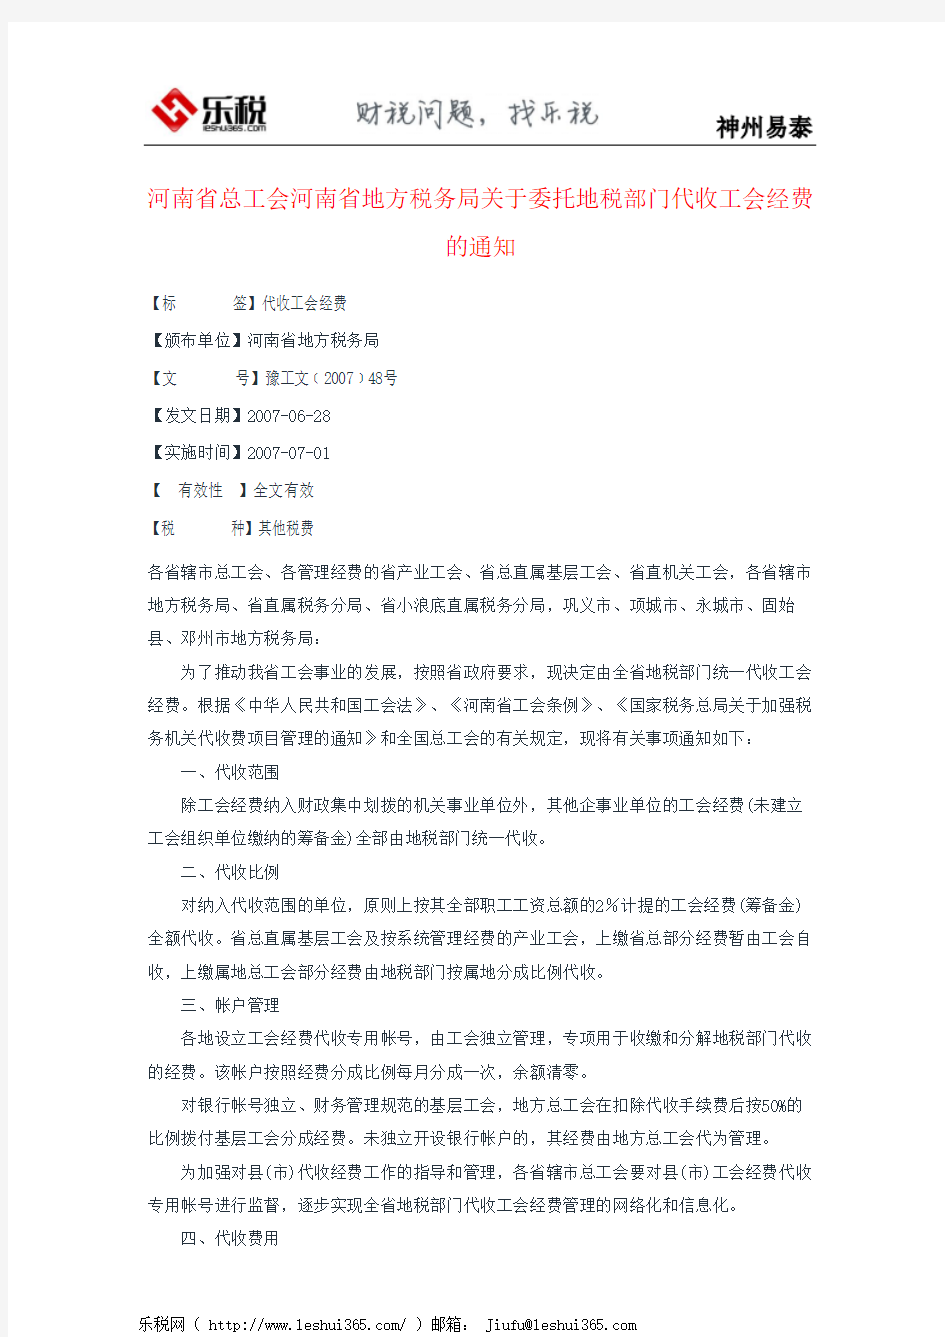 河南省总工会河南省地方税务局关于委托地税部门代收工会经费的通知